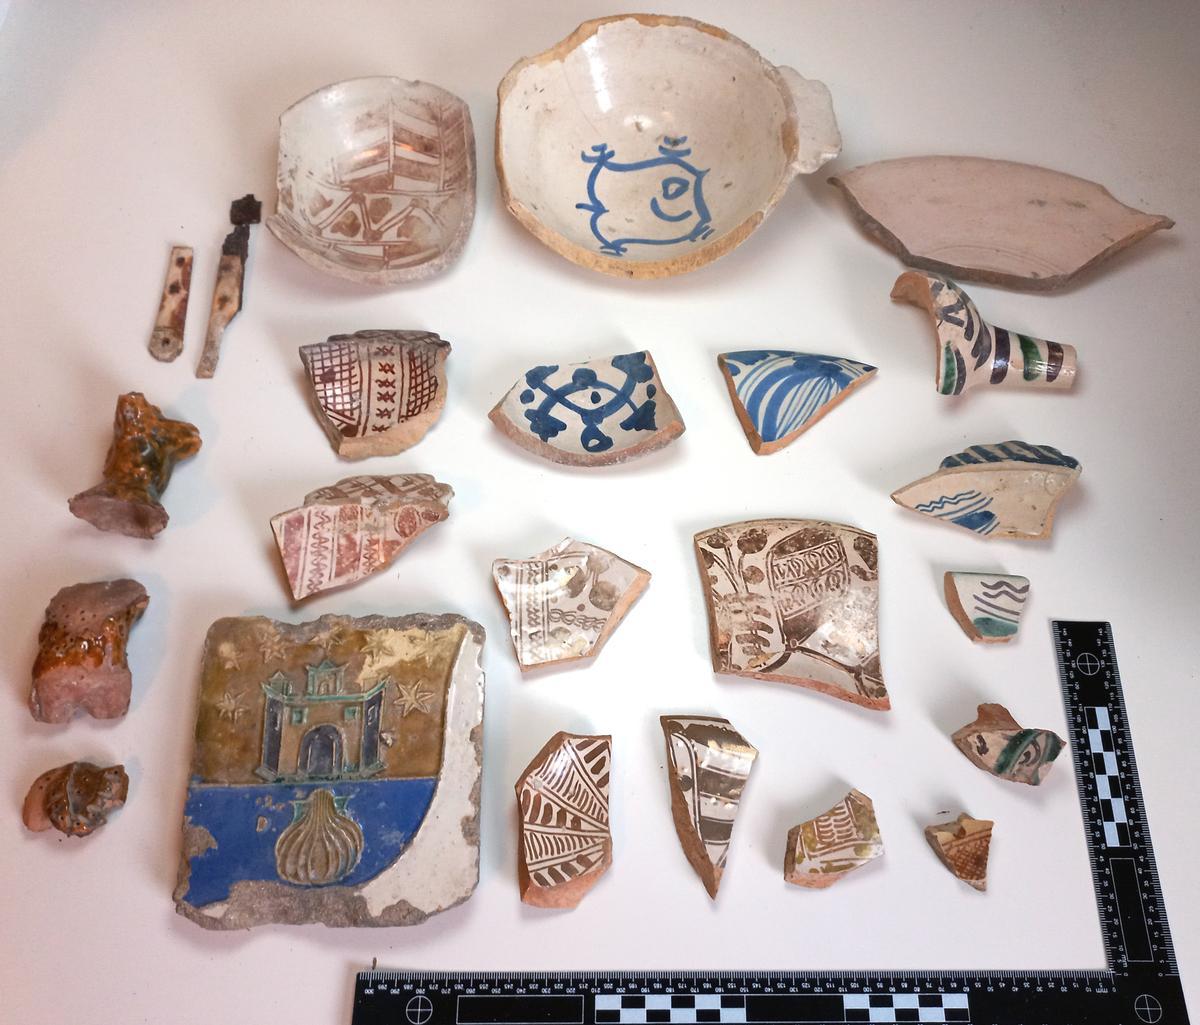 Durante los trabajos realizados en los últimos años se han encontrado piezas de cerámica musulmana.